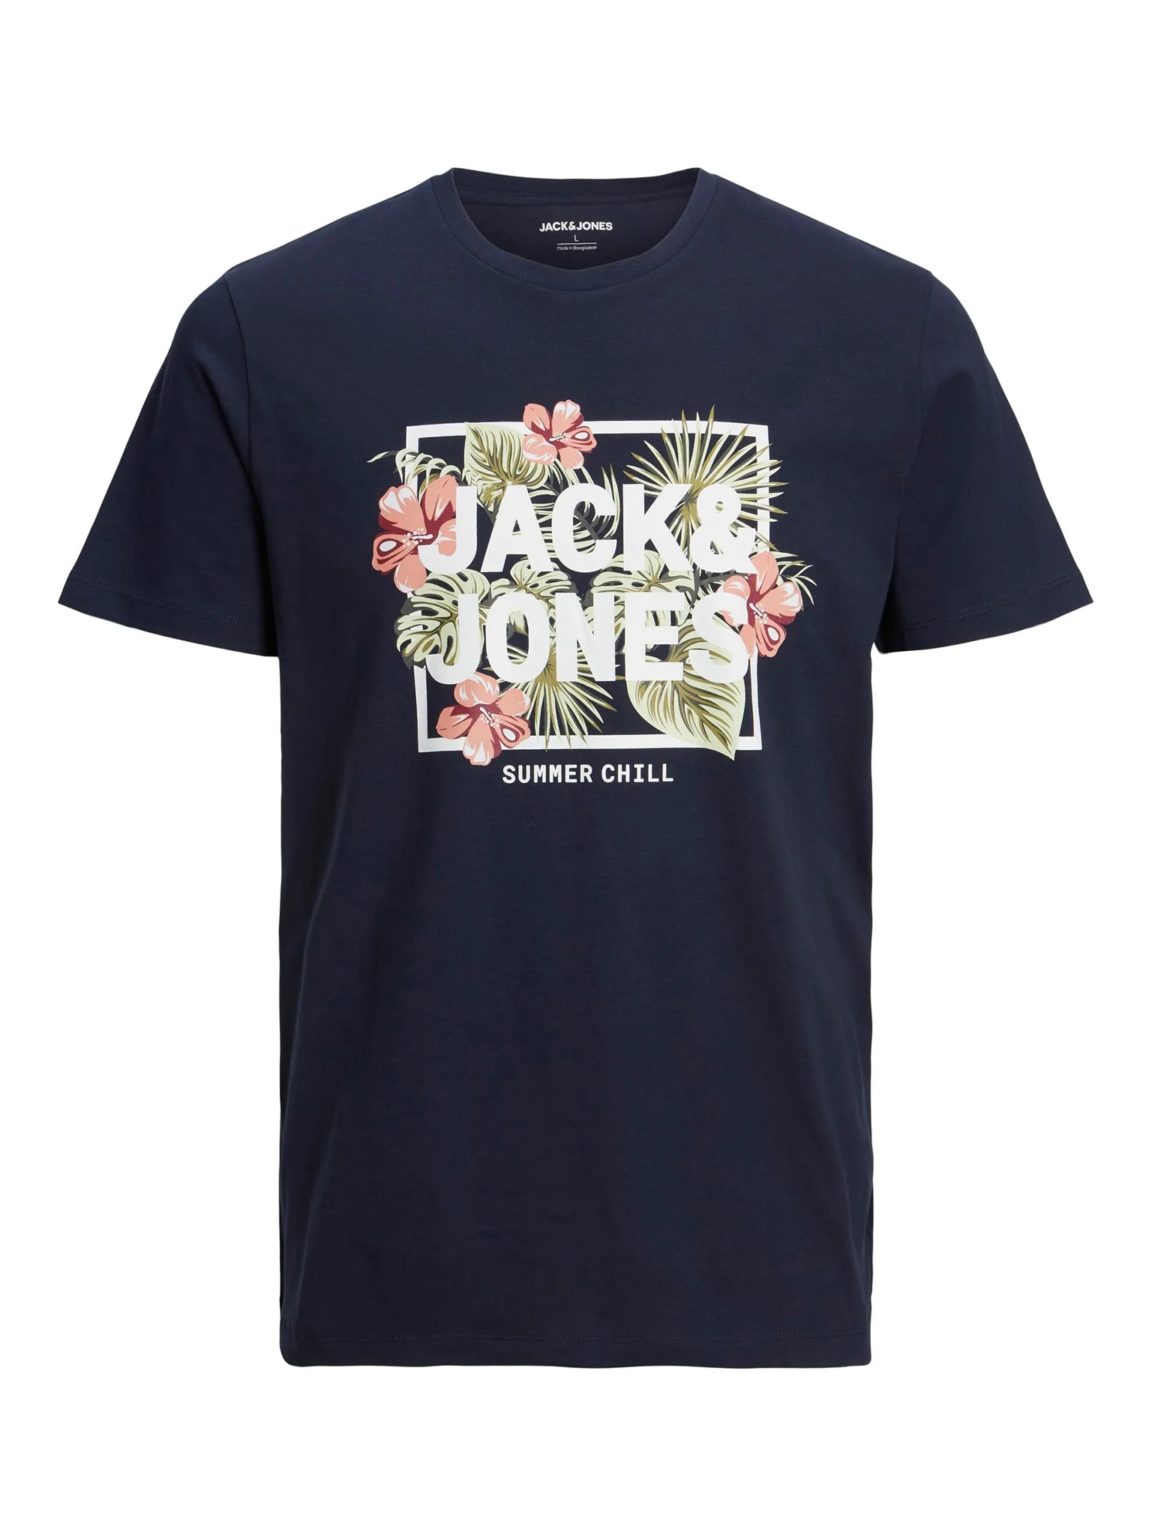 Μπλούζα T-shirt Μπλε, JACK & JONES